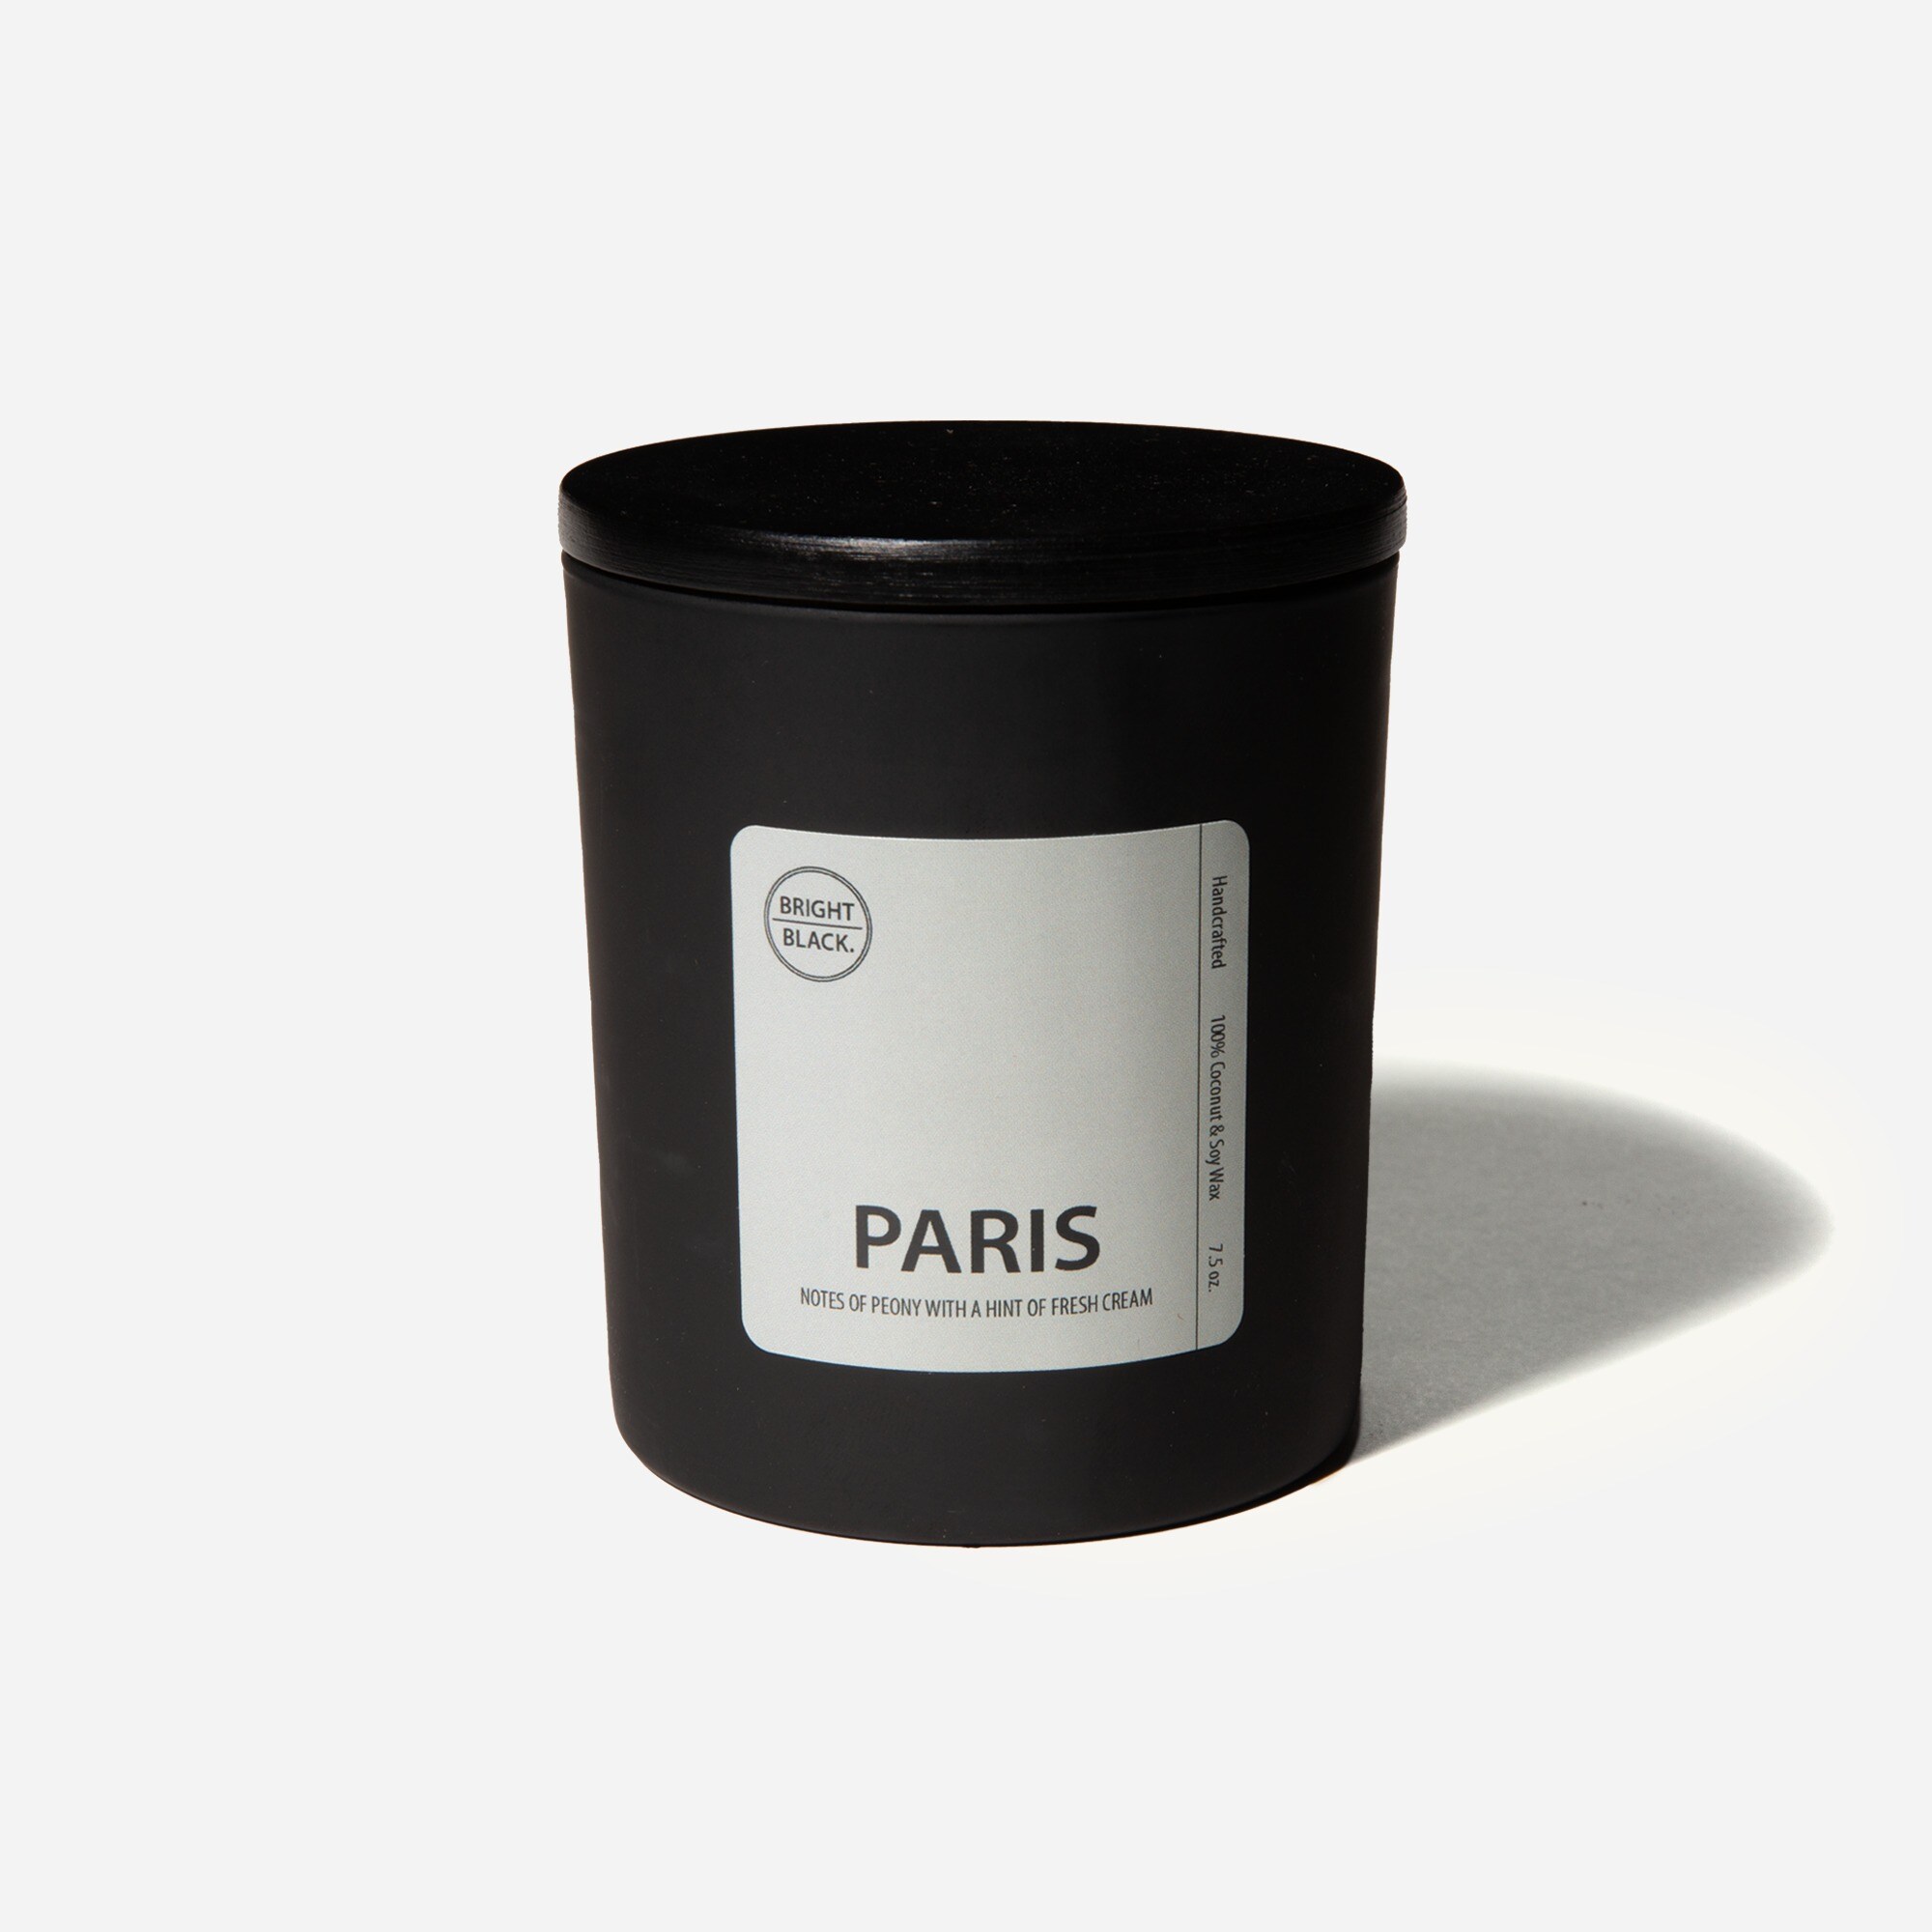 mens Bright Black™ Paris candle